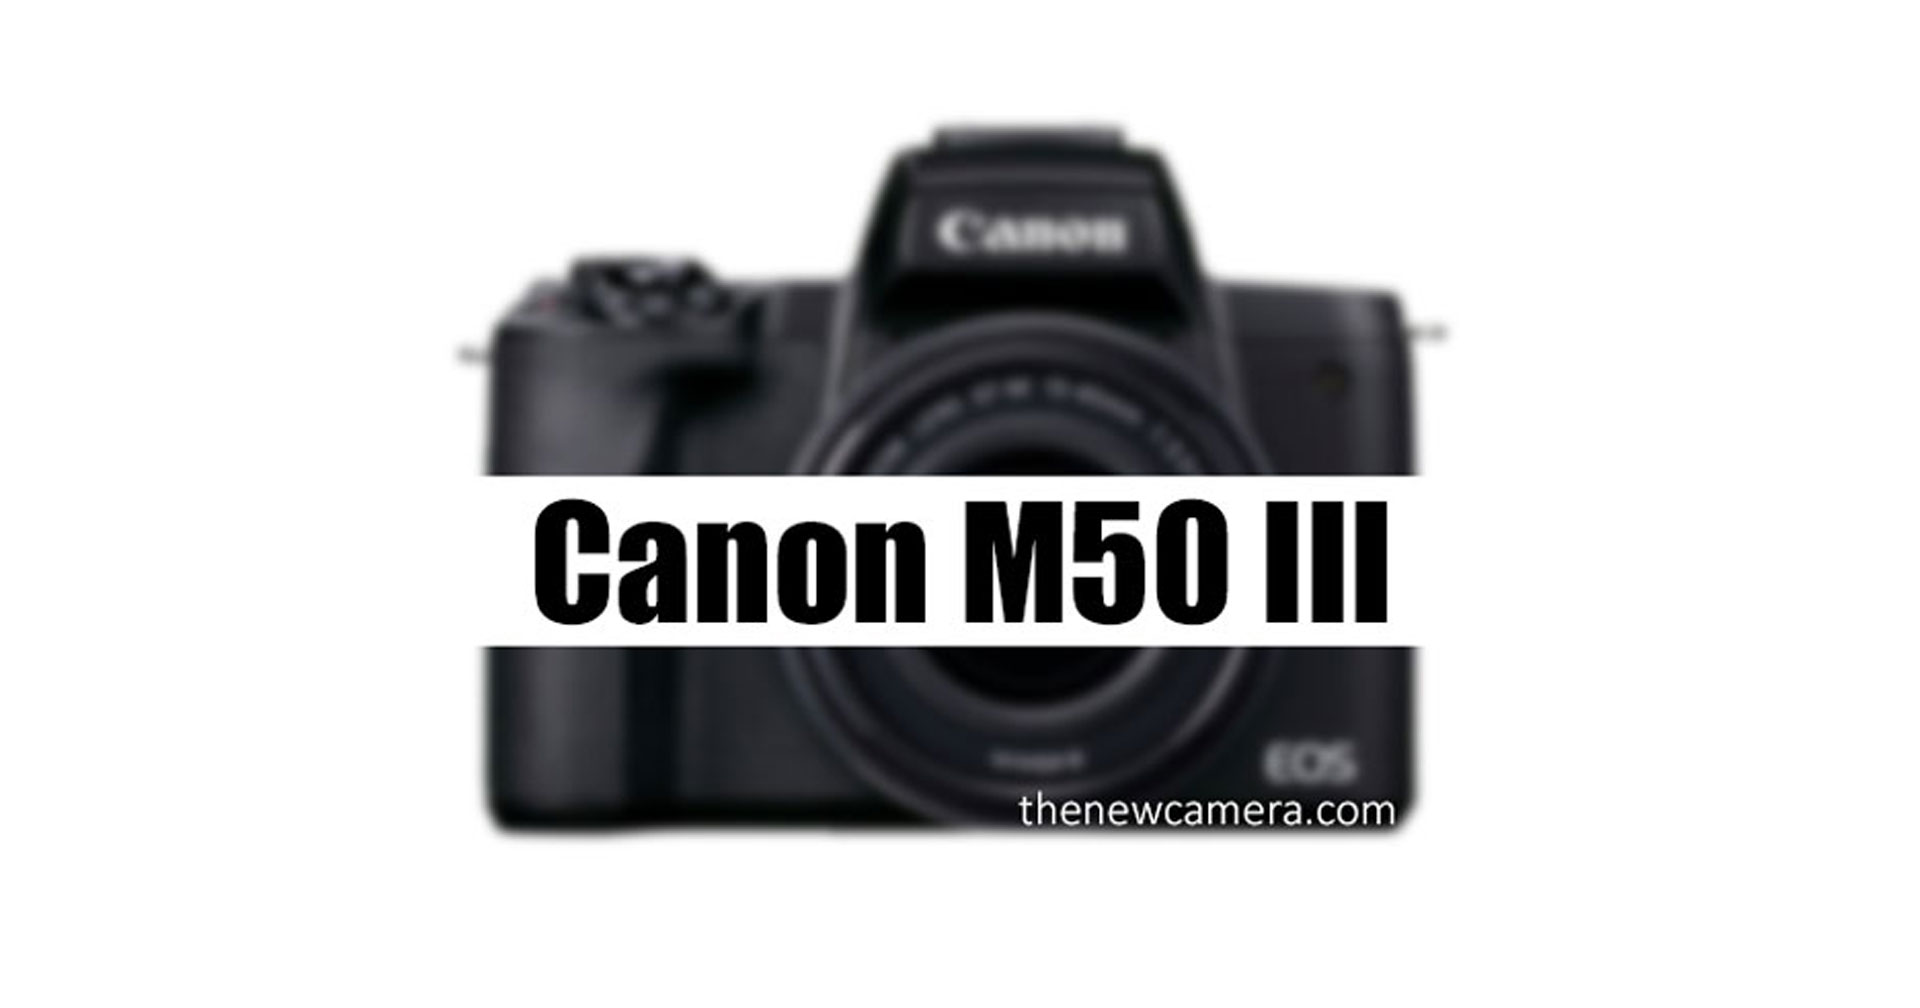 ลือสเปก Canon EOS M50 Mark III คาดเปิดตัวไตรมาส 4 ปีนี้!